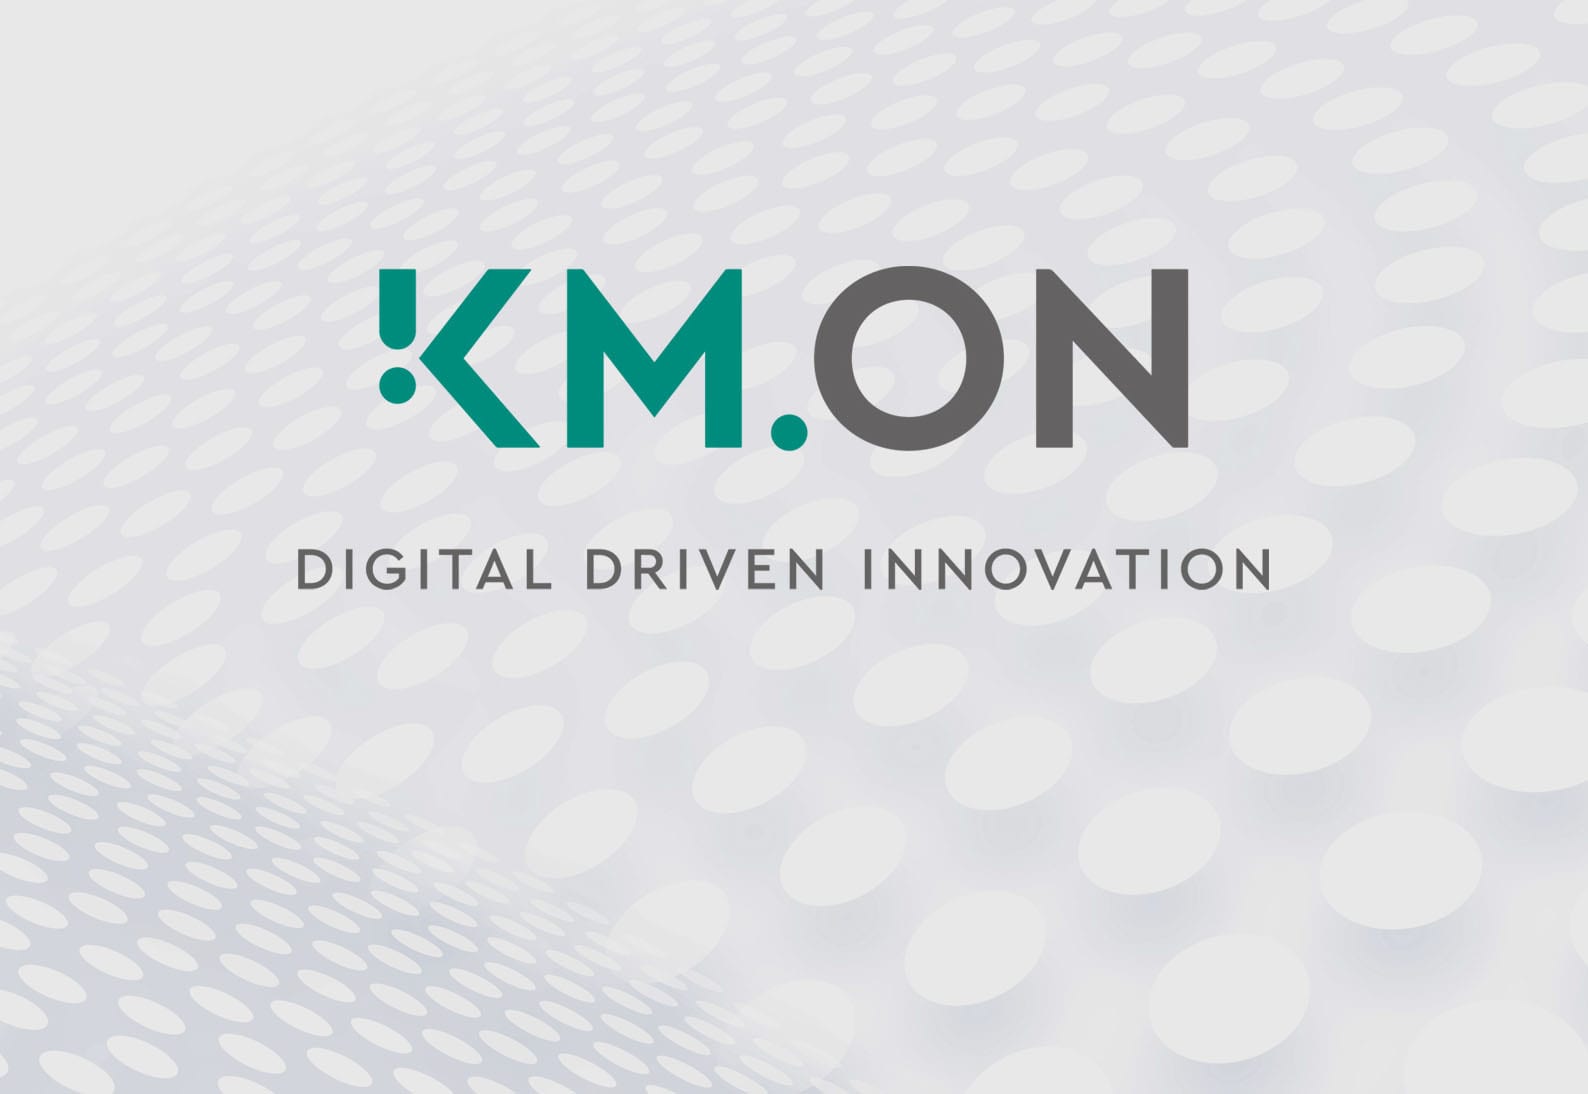 KARL MAYER launcht KM.ON – eine neue Marke für digitale Lösungen